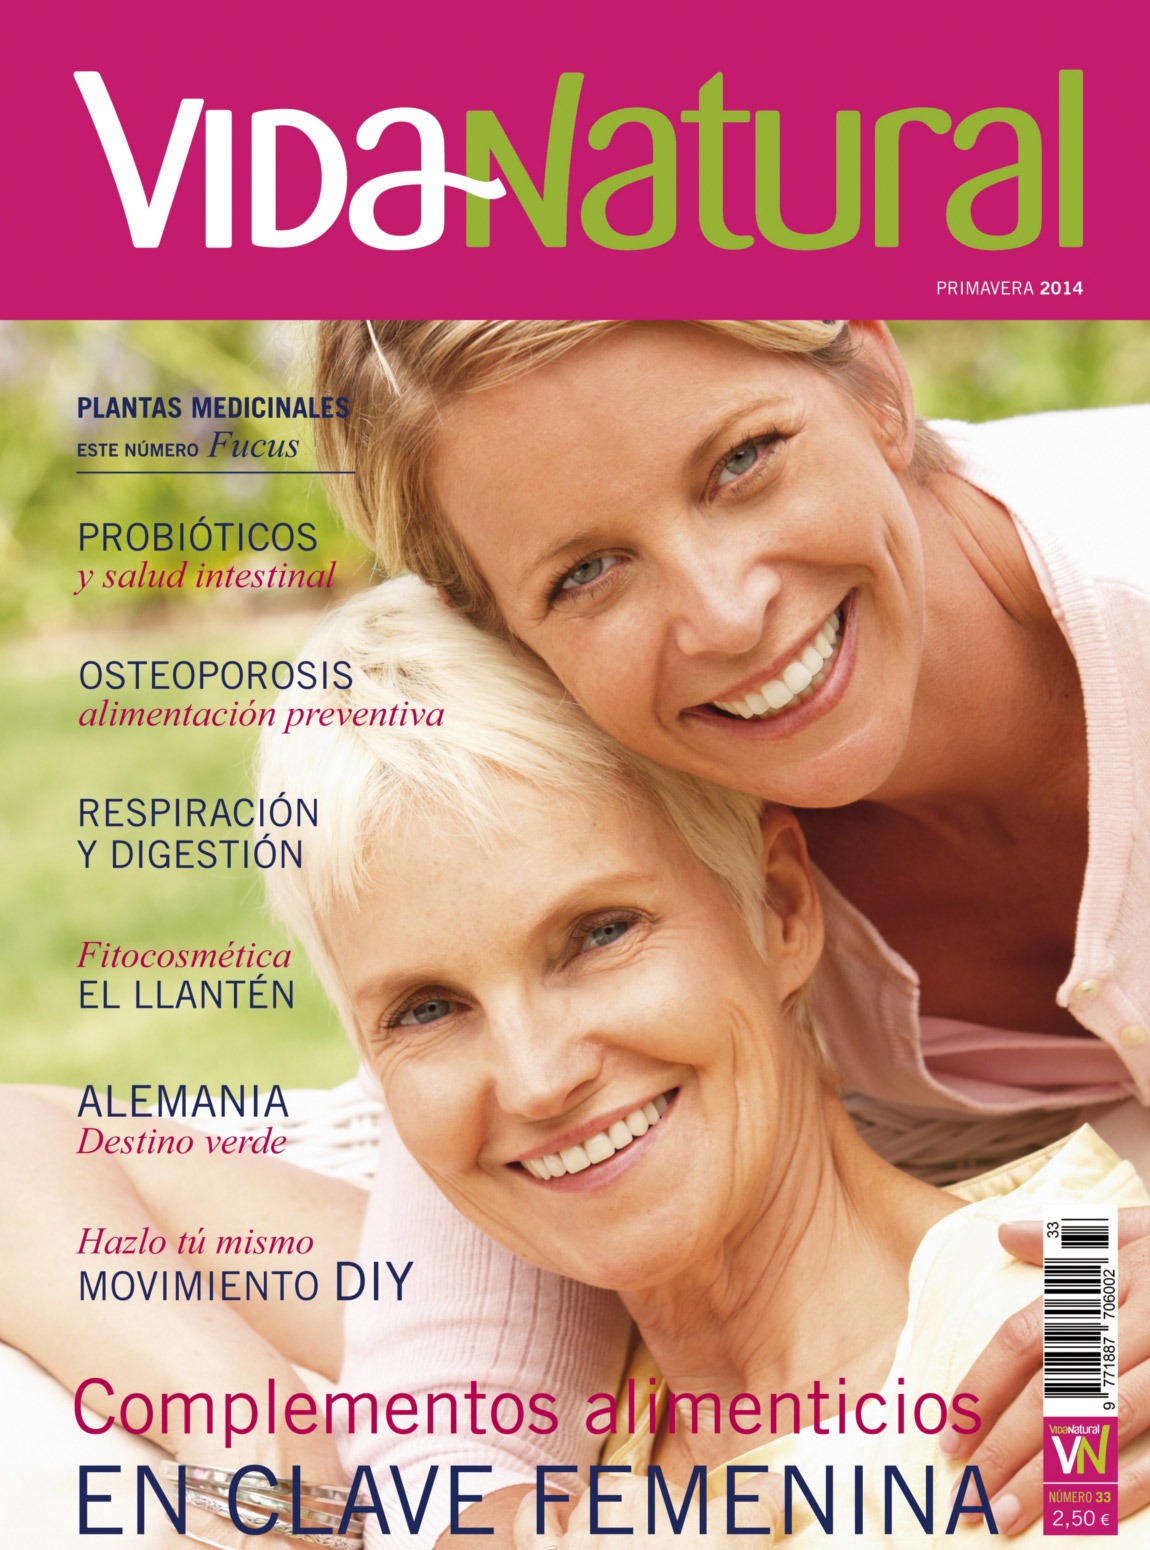 Revista Vida Natural nº 33- Primavera de 2014